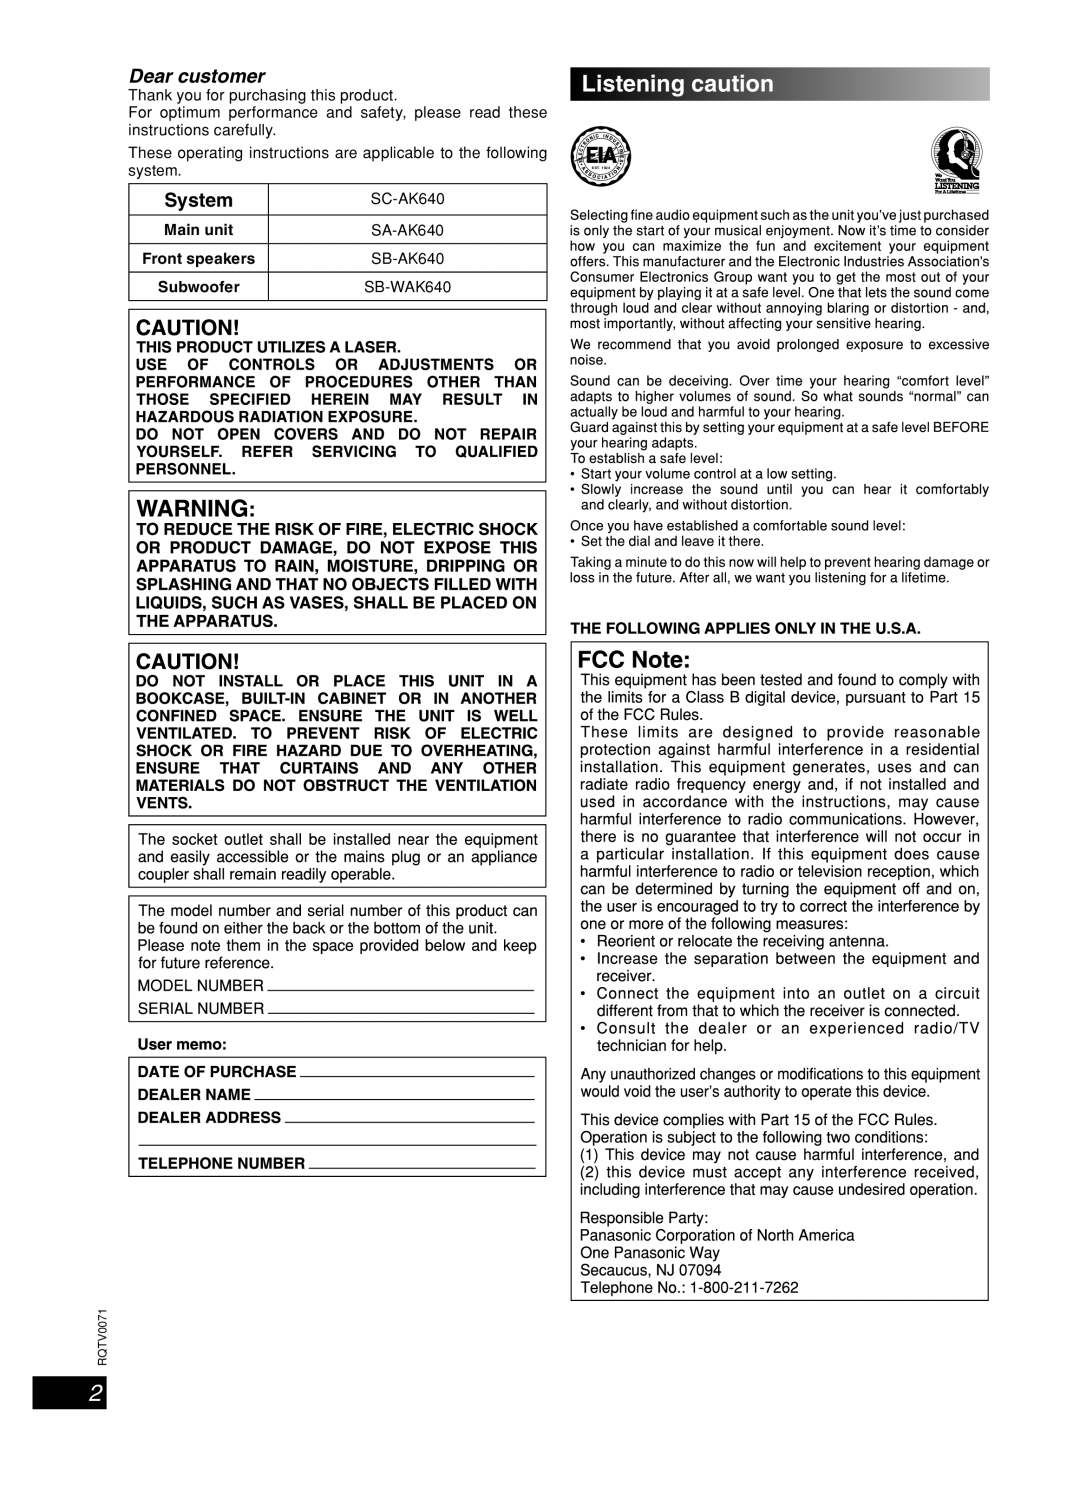 Panasonic SC-AK640 important safety instructions Listening caution, English Dansk Français, Lang 